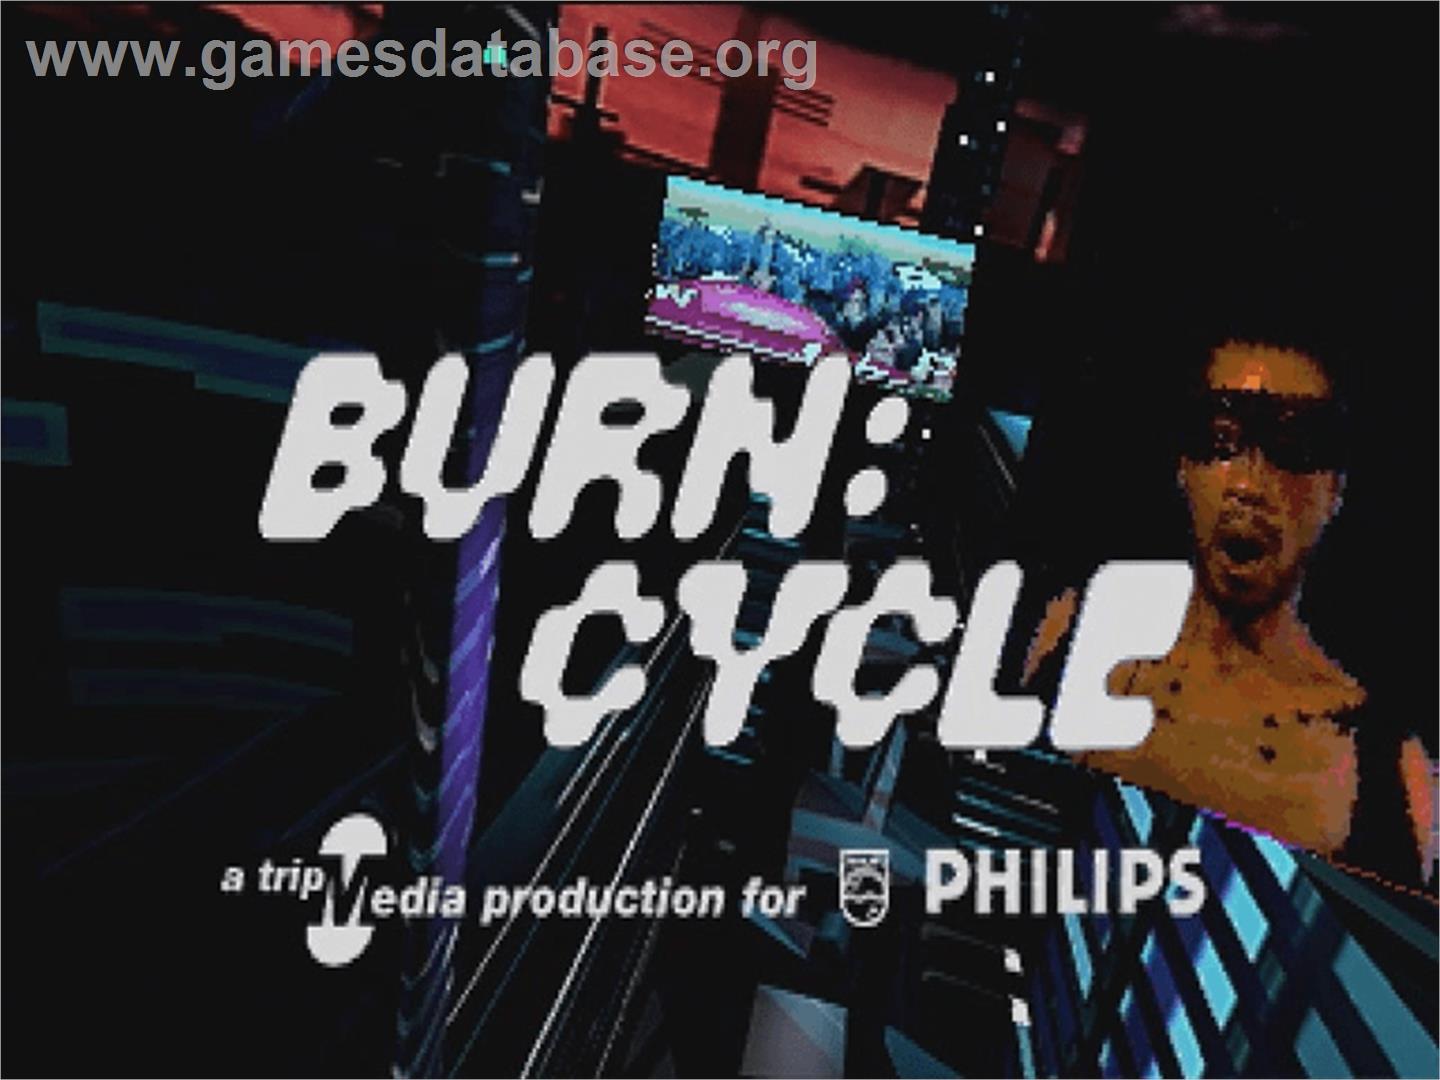 Burn: Cycle - Philips CD-i - Artwork - Title Screen